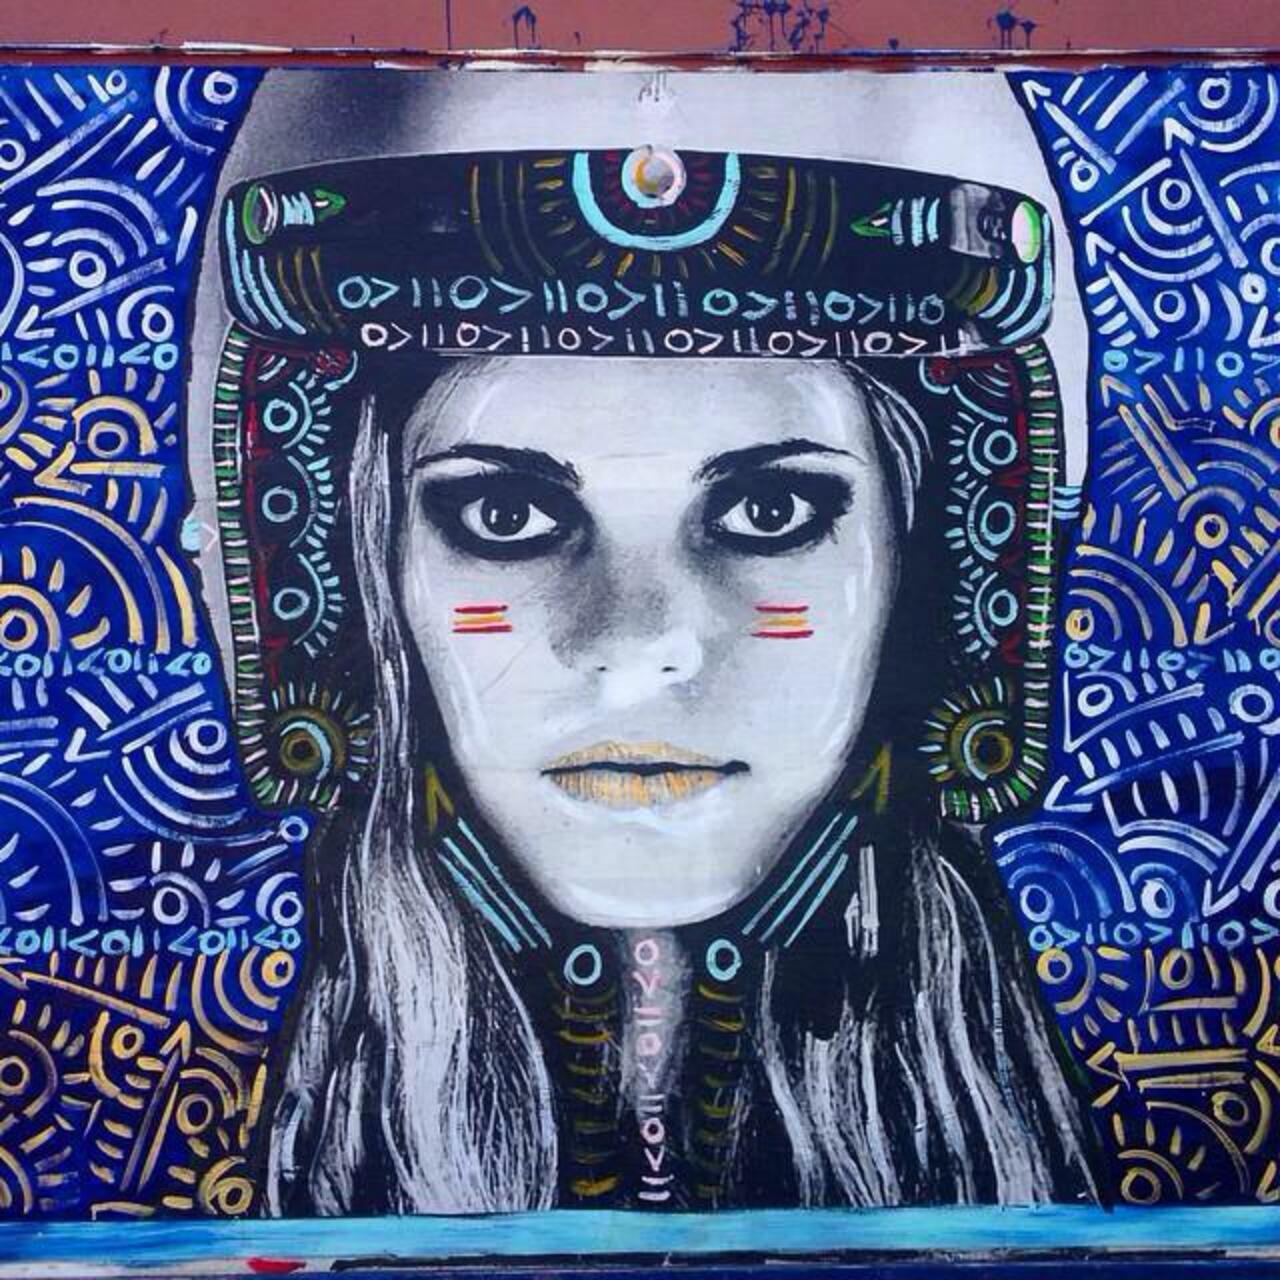 Street Art by Kelcey Fisher in LA
Photo by djcatnap

#art #arte #graffiti #streetart http://t.co/DdpuB4XBE5